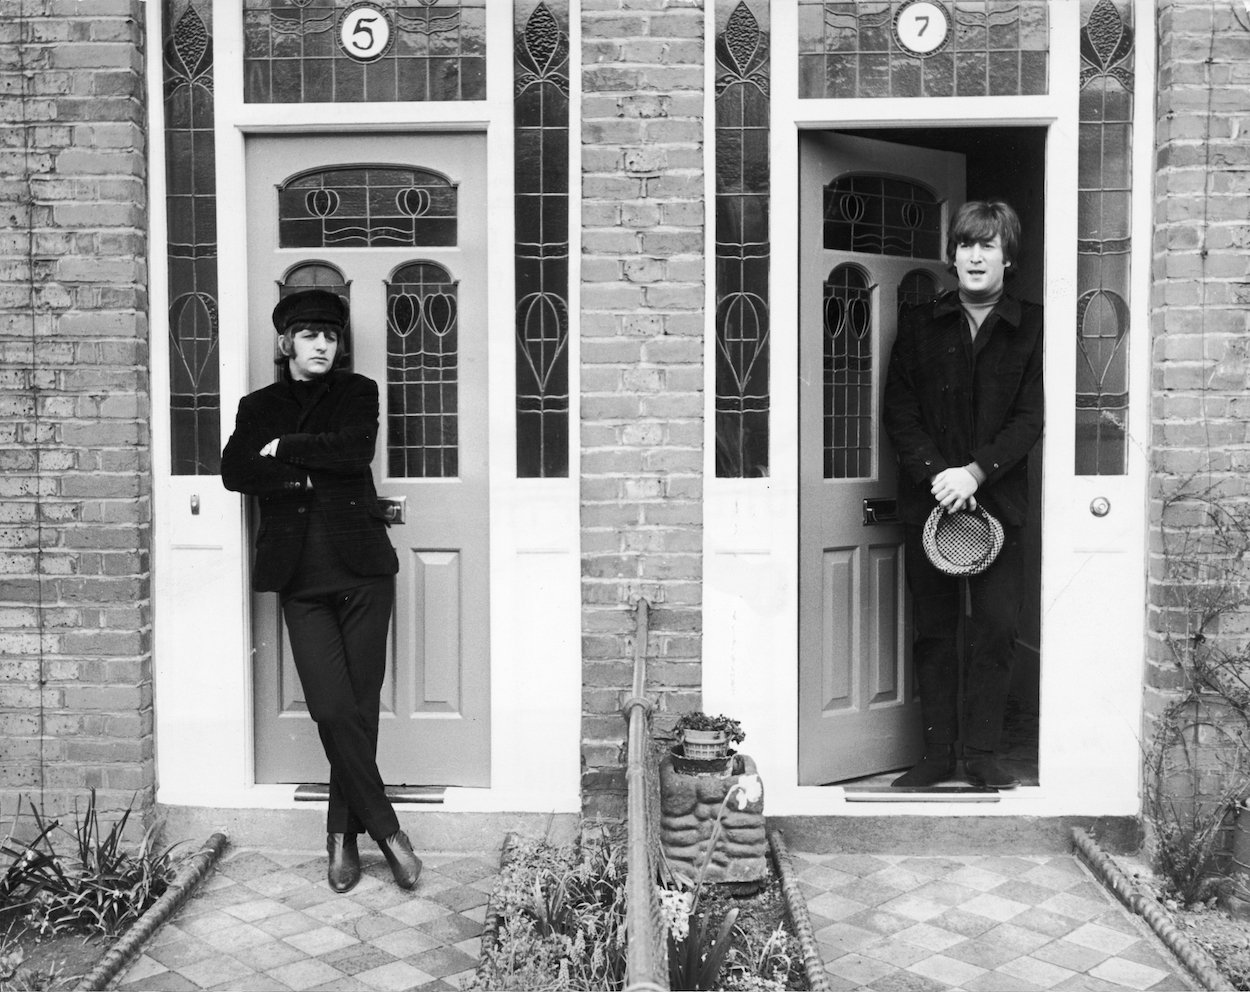 Ringo Starr (left) and John Lennon film 'Help' in 1965 outside apartment doors.